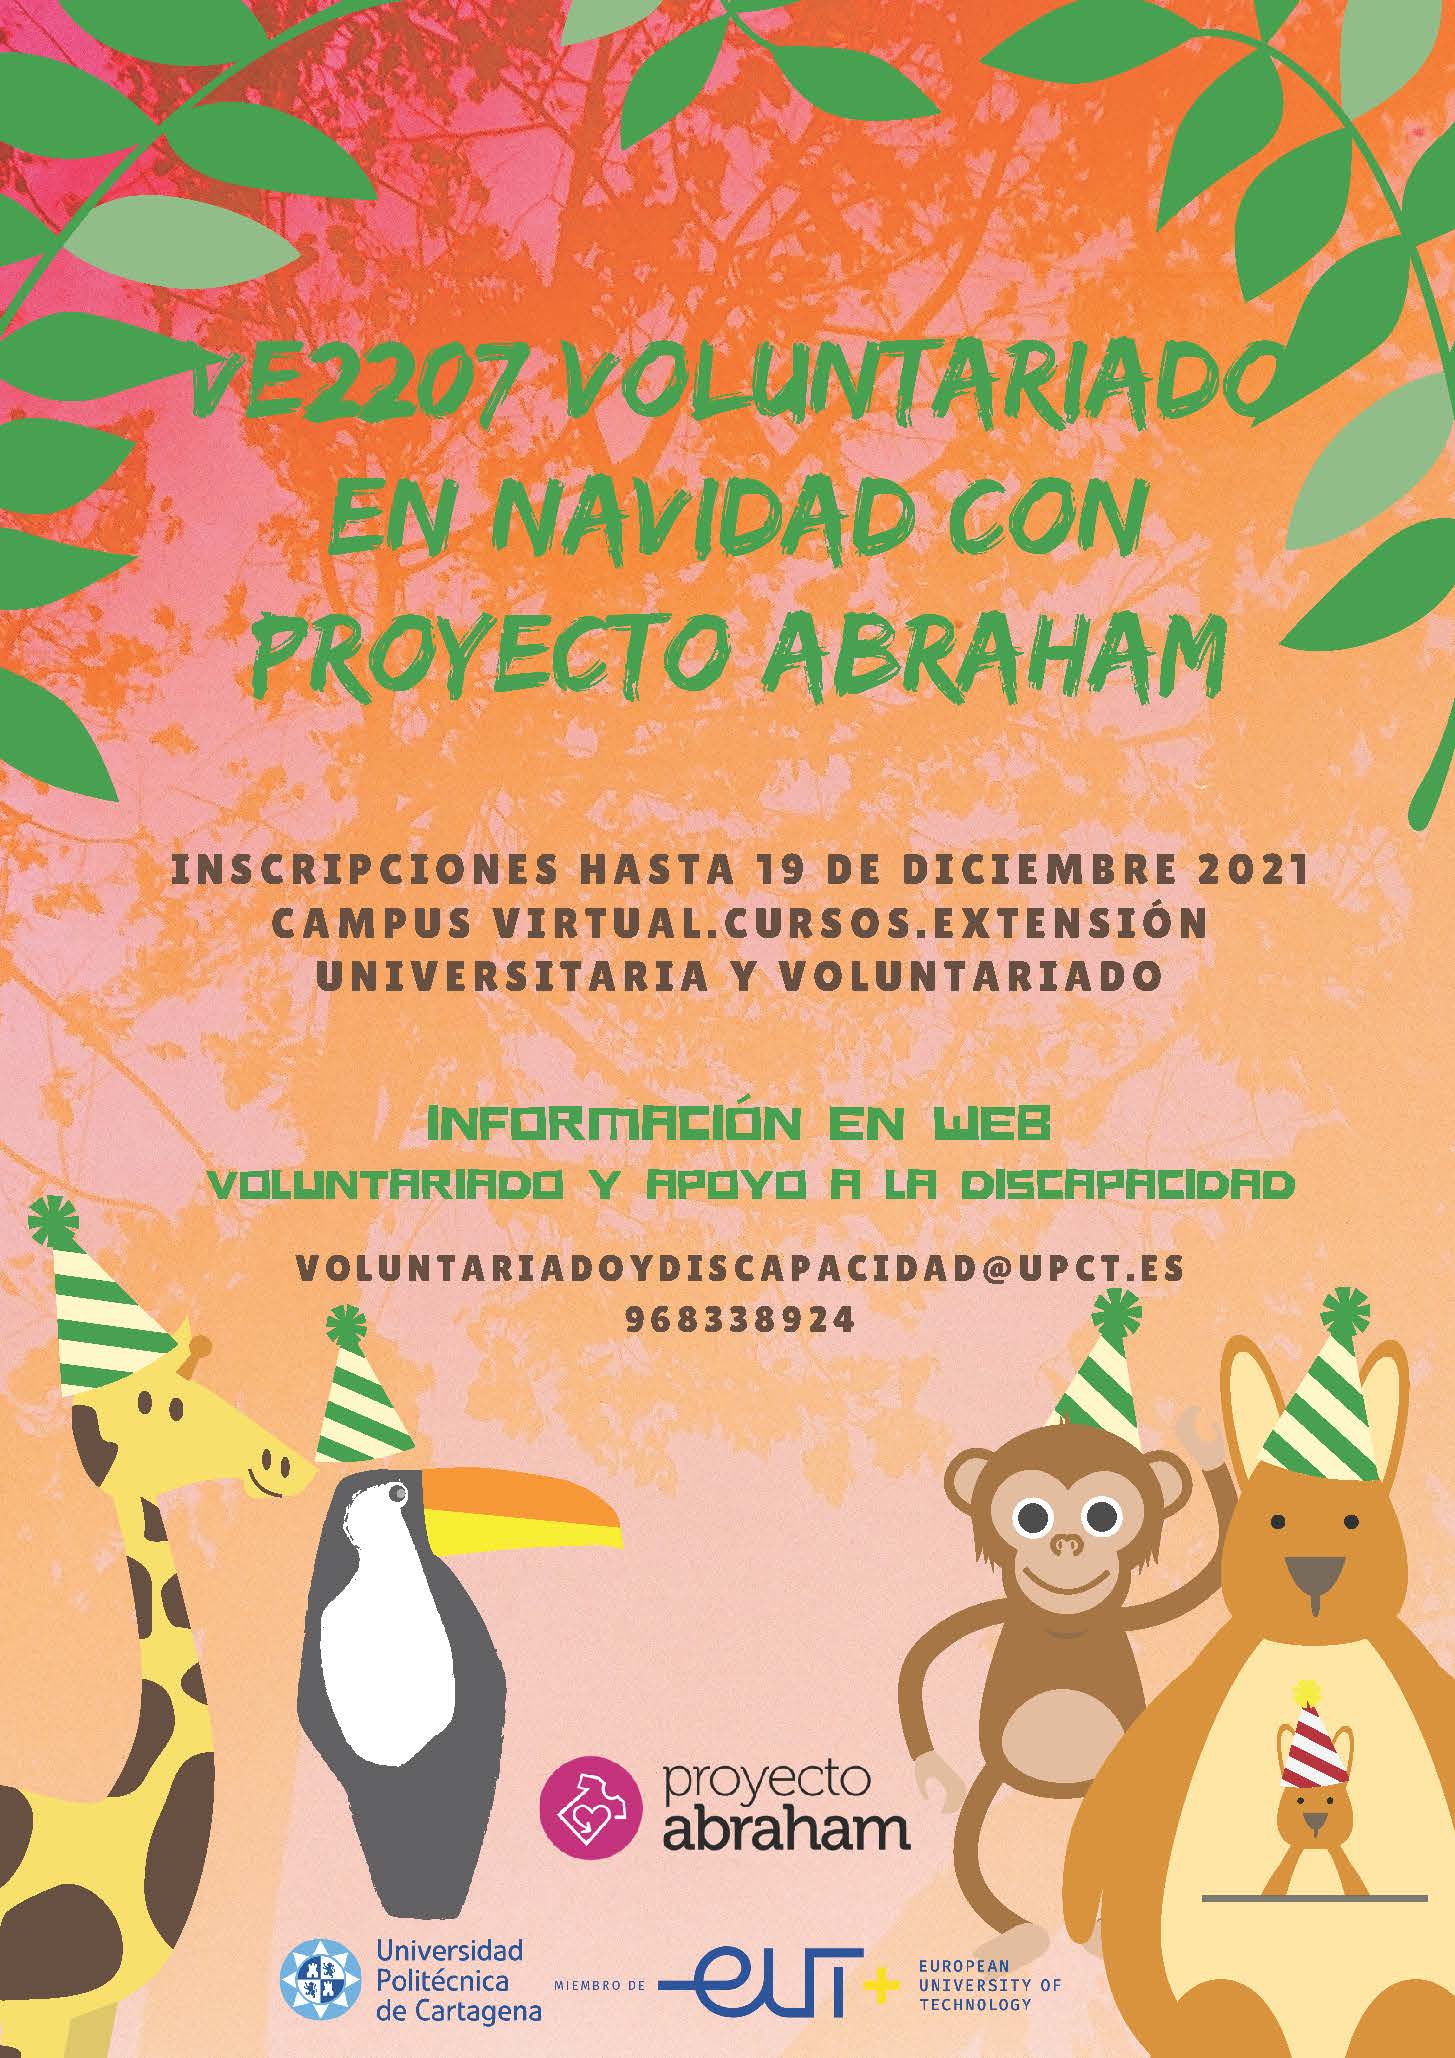 Voluntariado en Navidad con Proyecto Abraham VE2207